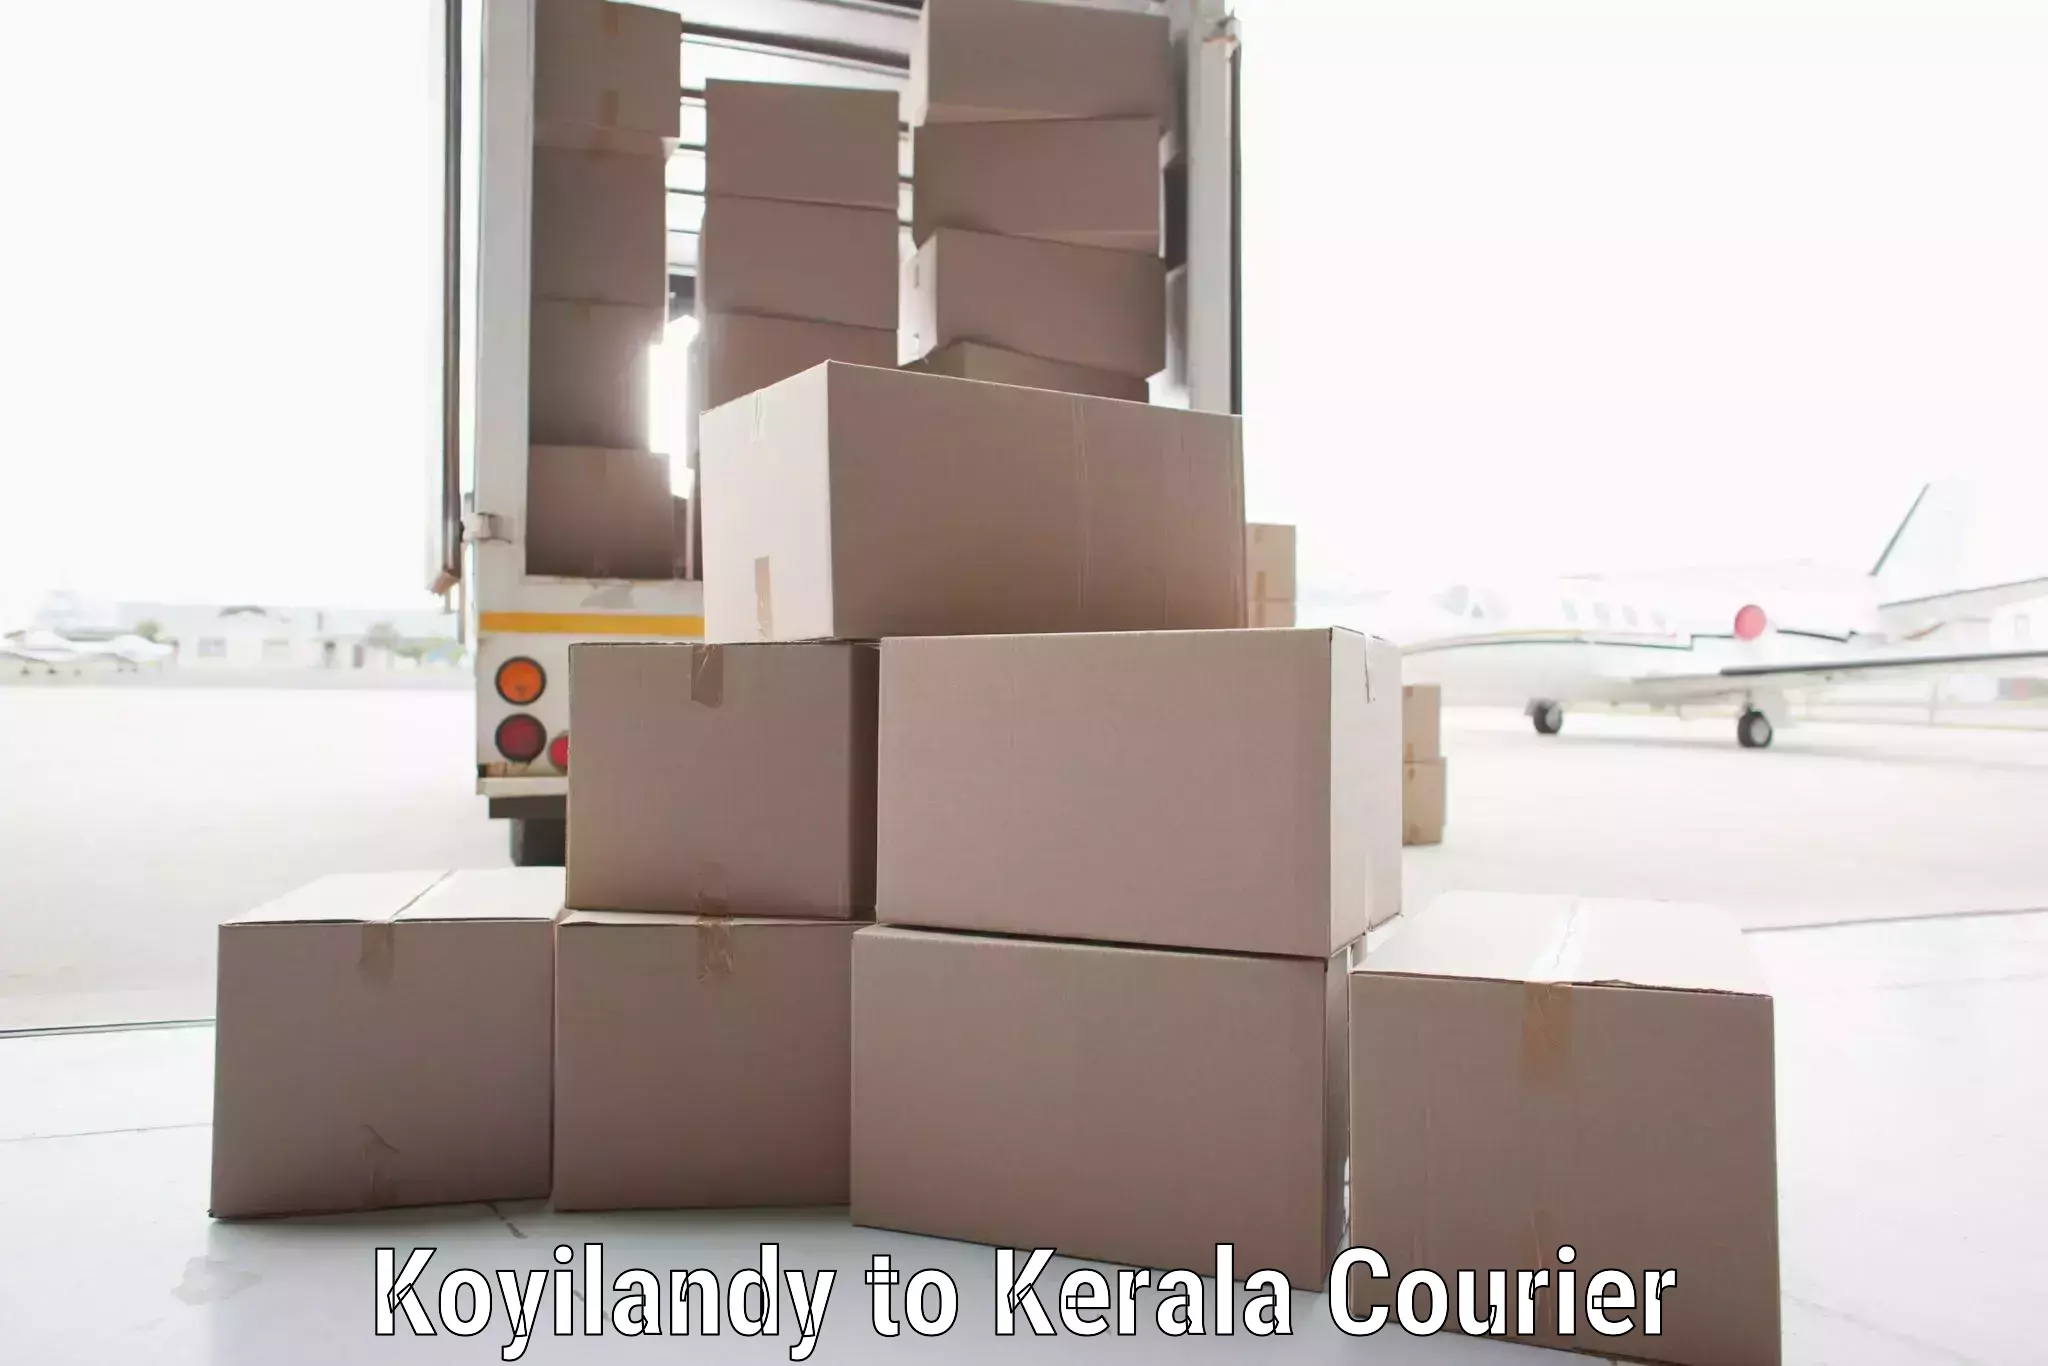 Courier app Koyilandy to Thrissur